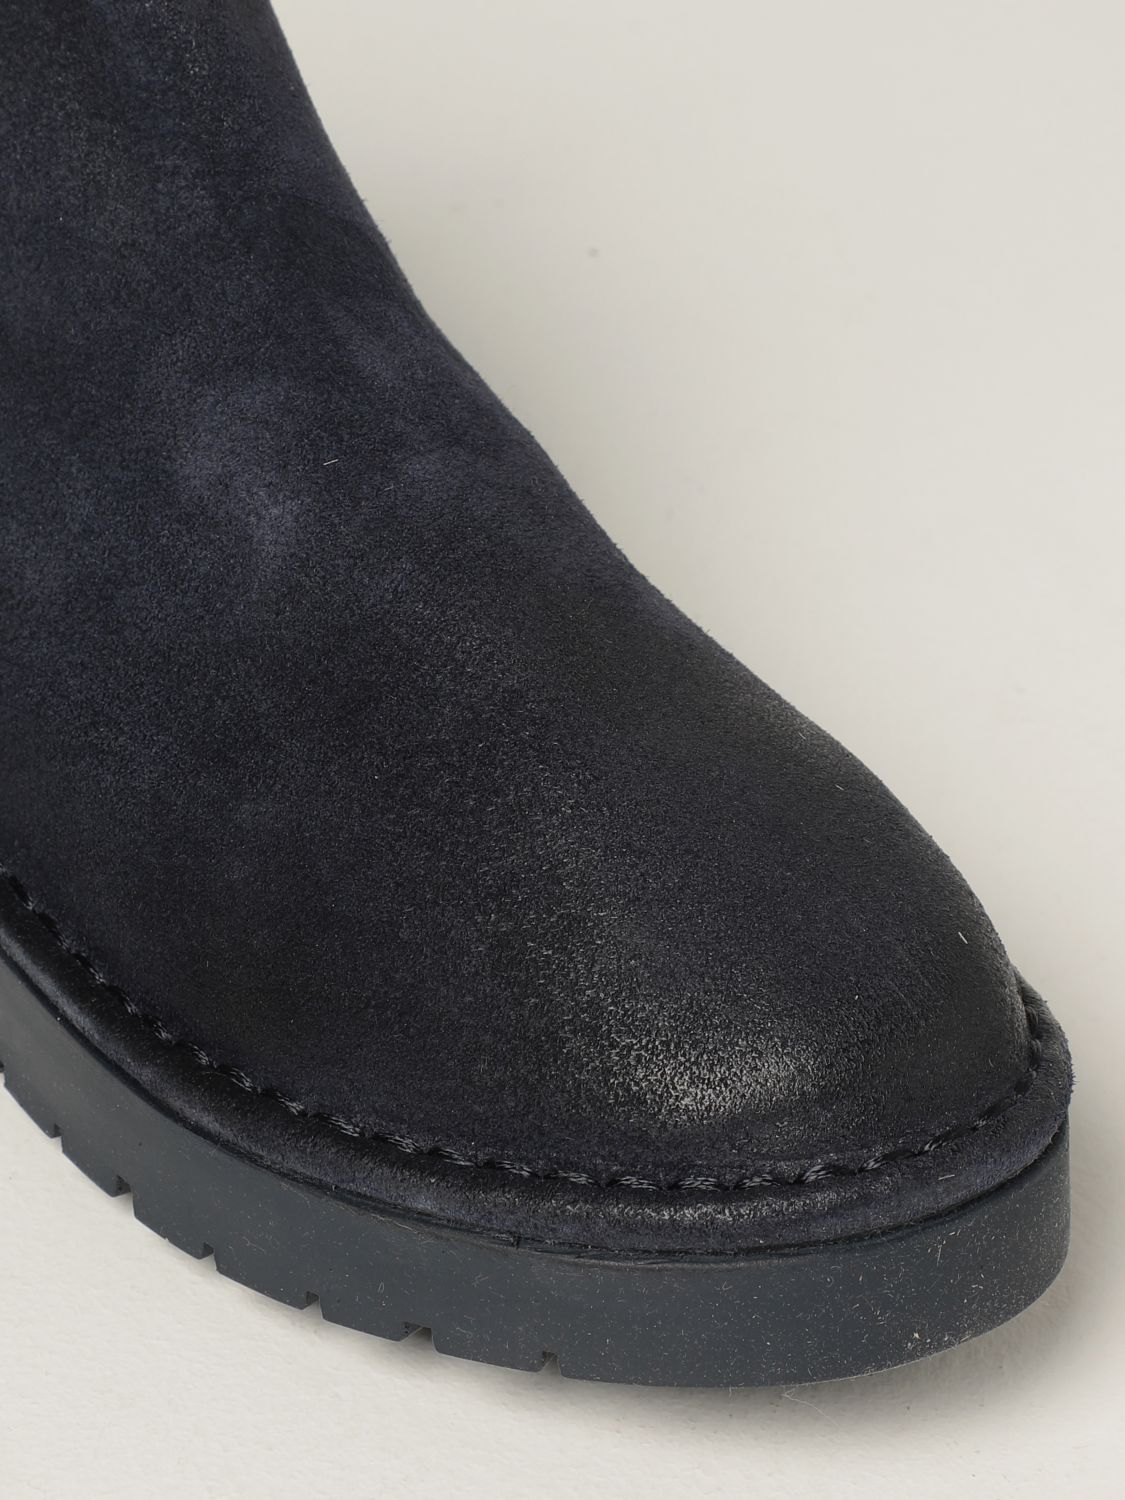 Stiefeletten Marsèll: Schuhe herren Marsell blau 4